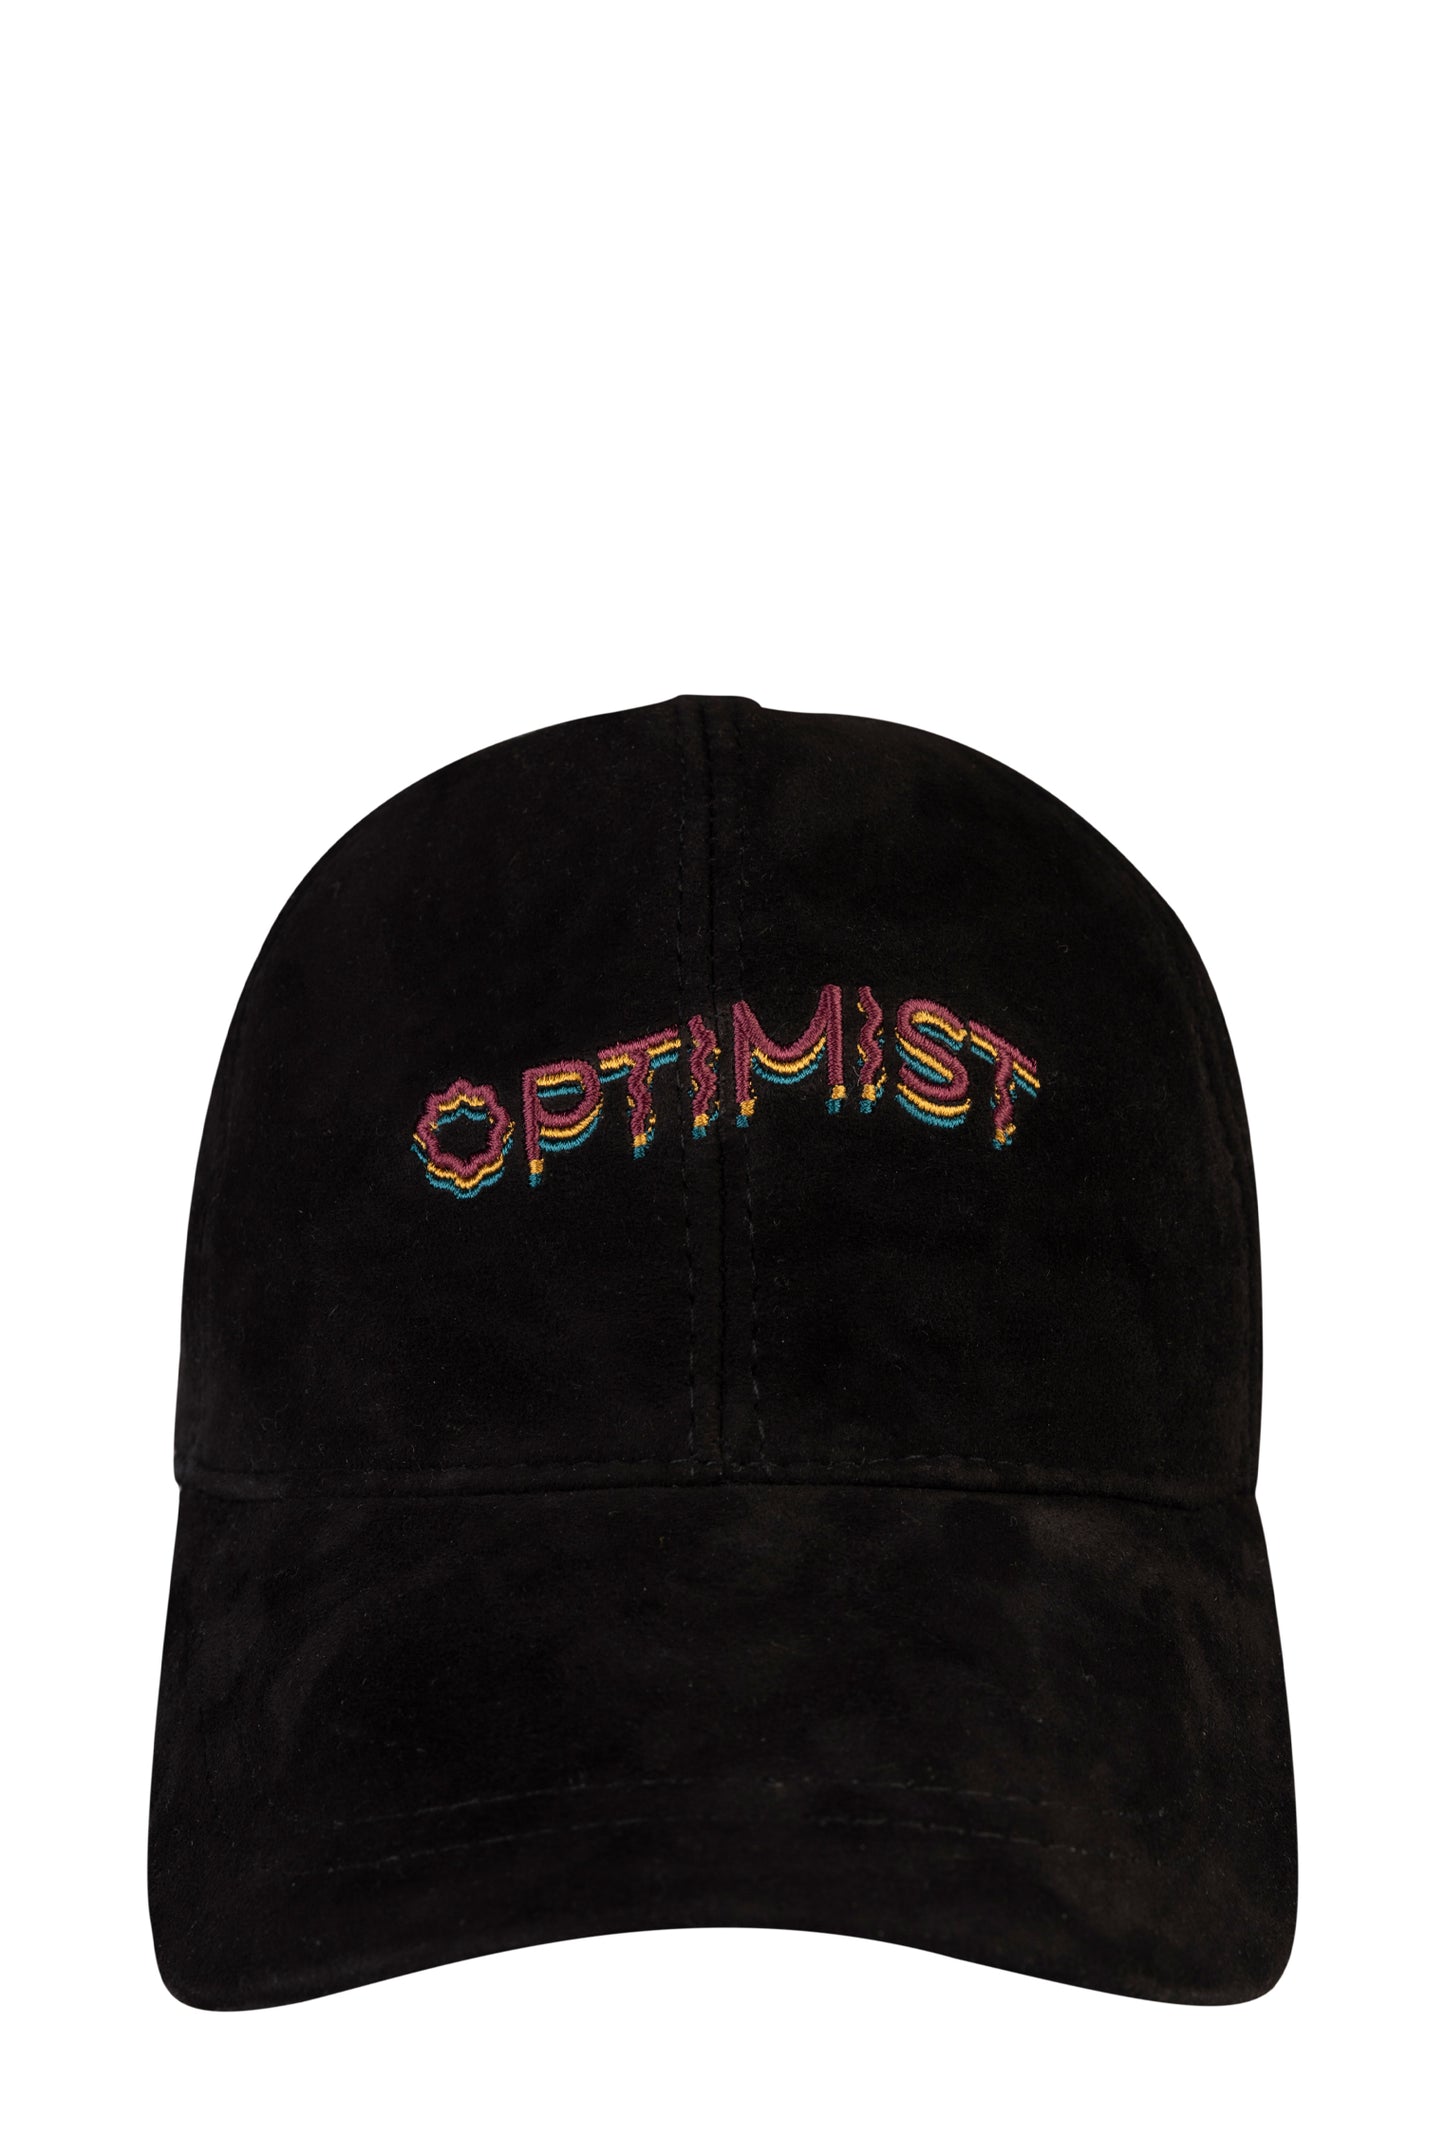 Optimist - Black